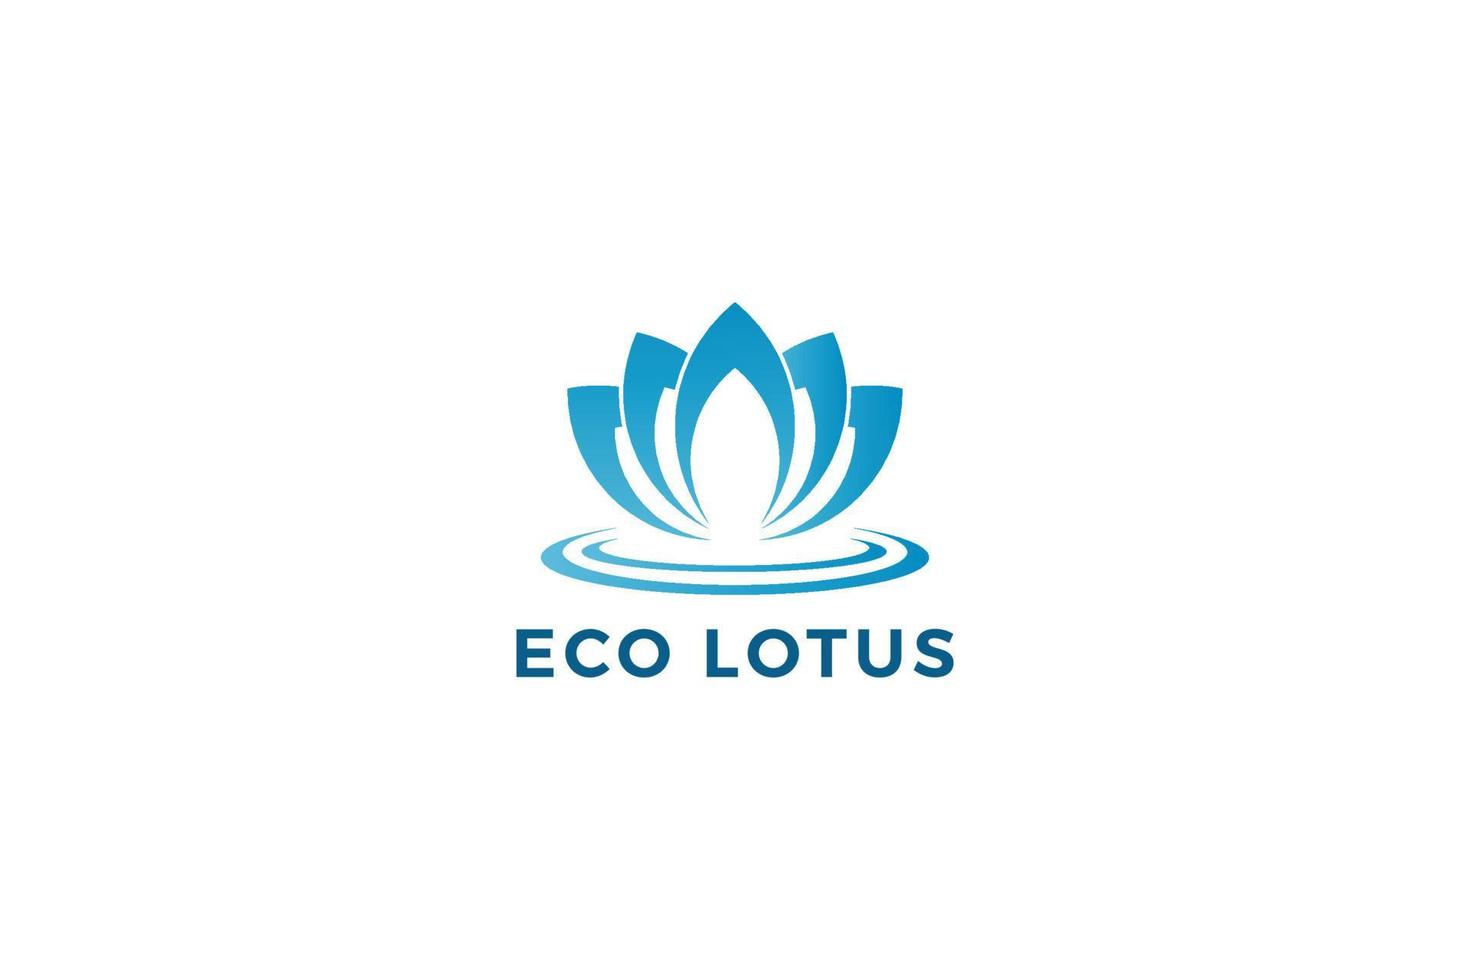 création de logo de fleur de lotus vecteur